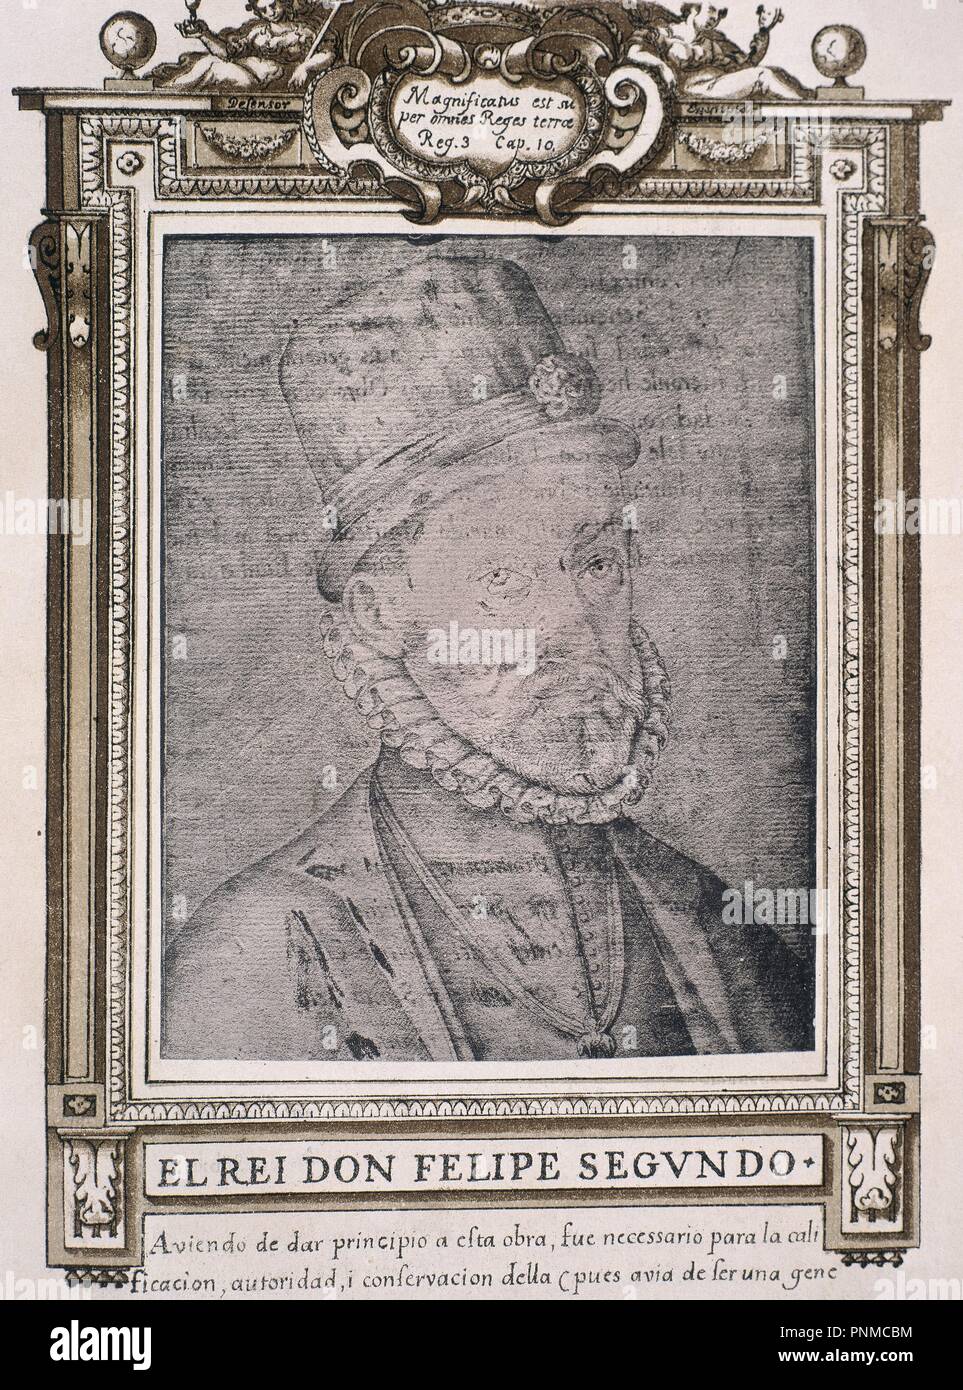 FELIPE II (1527-1598) - LIBRO DE RETRATOS DE ILUSTRES Y MEMORABLES VARONES - 1599. Author: PACHECO, FRANCISCO. Location: BIBLIOTECA NACIONAL-COLECCION. MADRID. SPAIN. Stock Photo